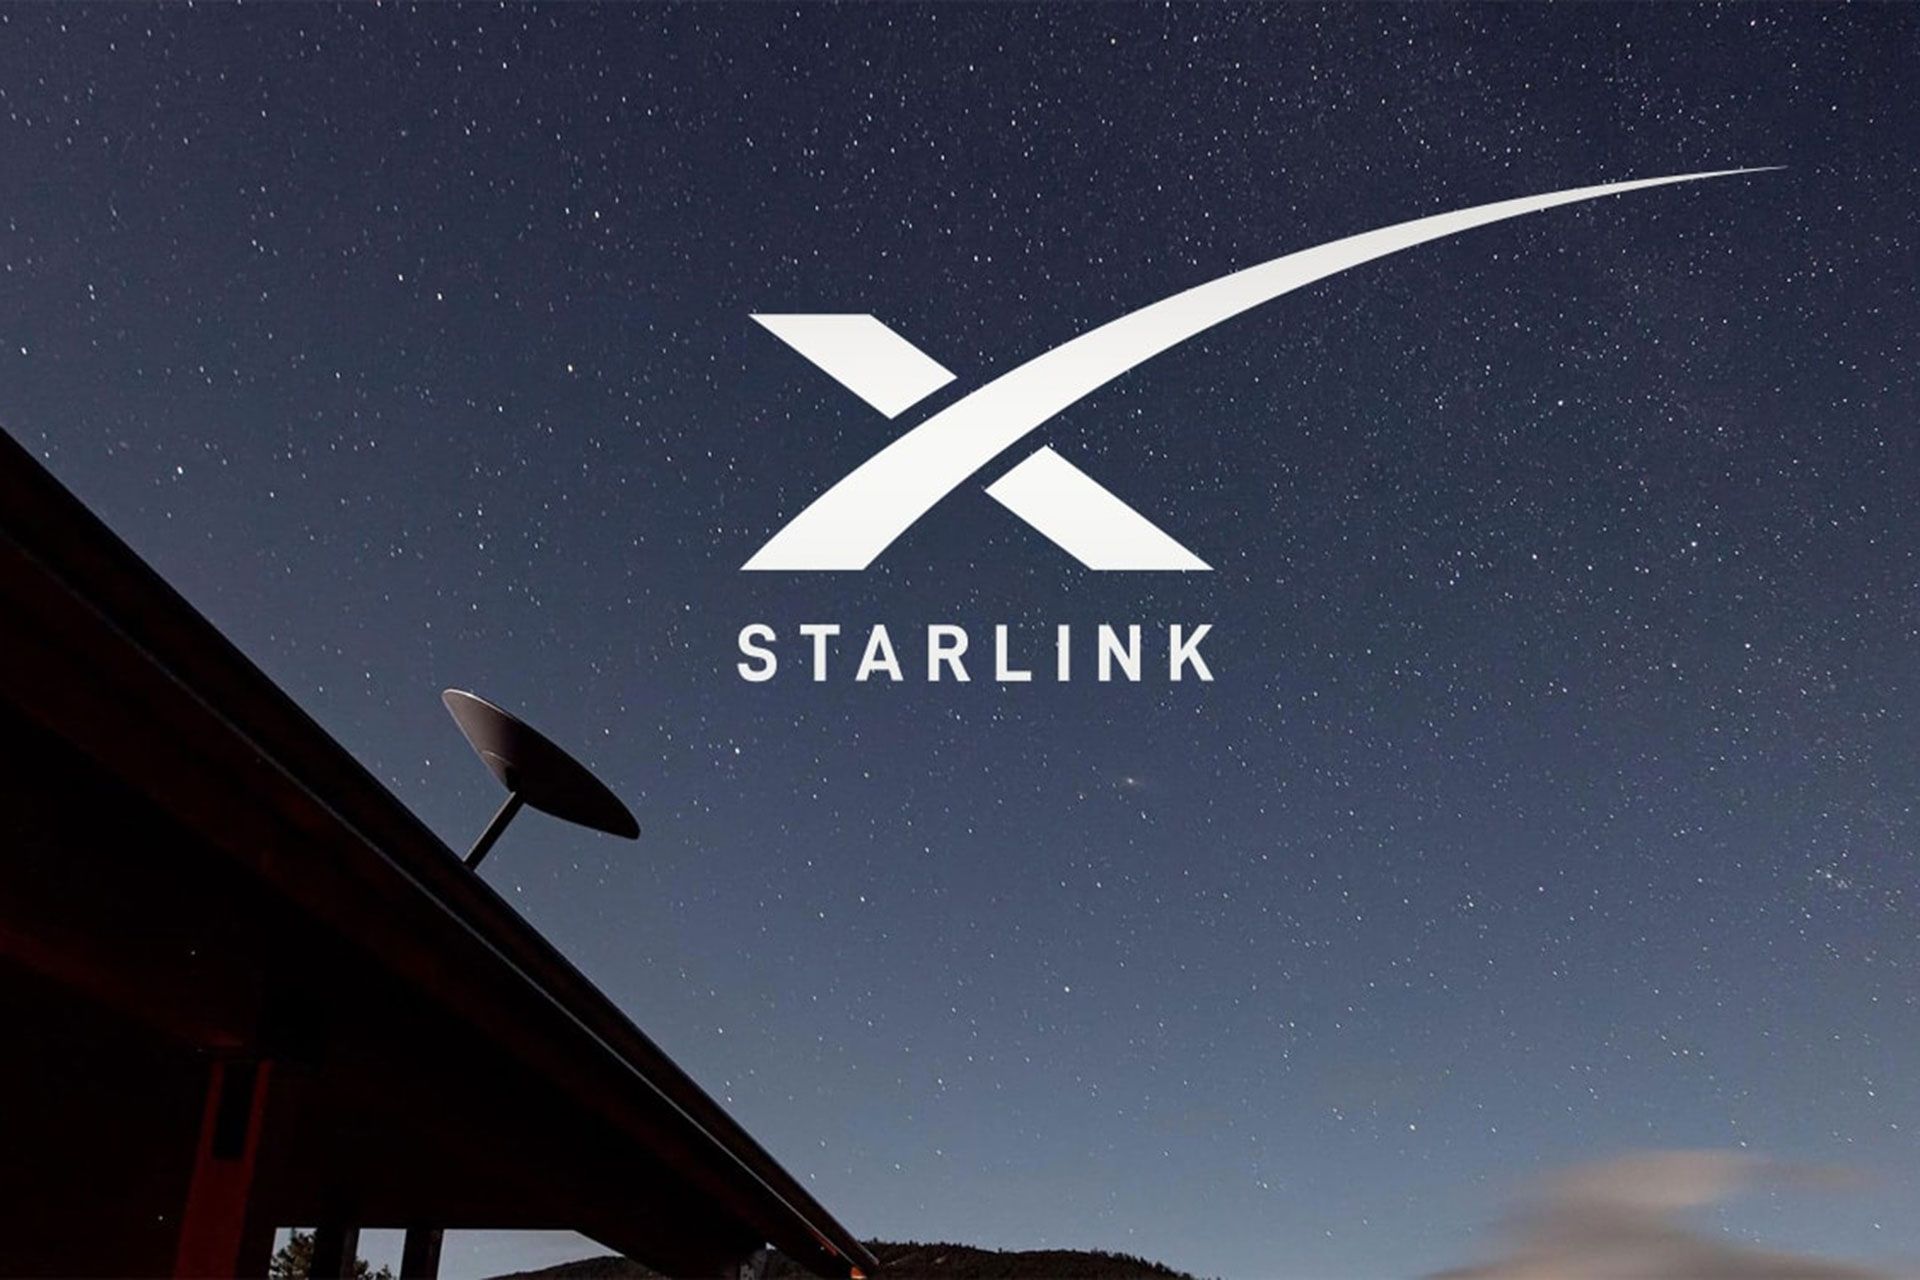 استارلینک / Starlink